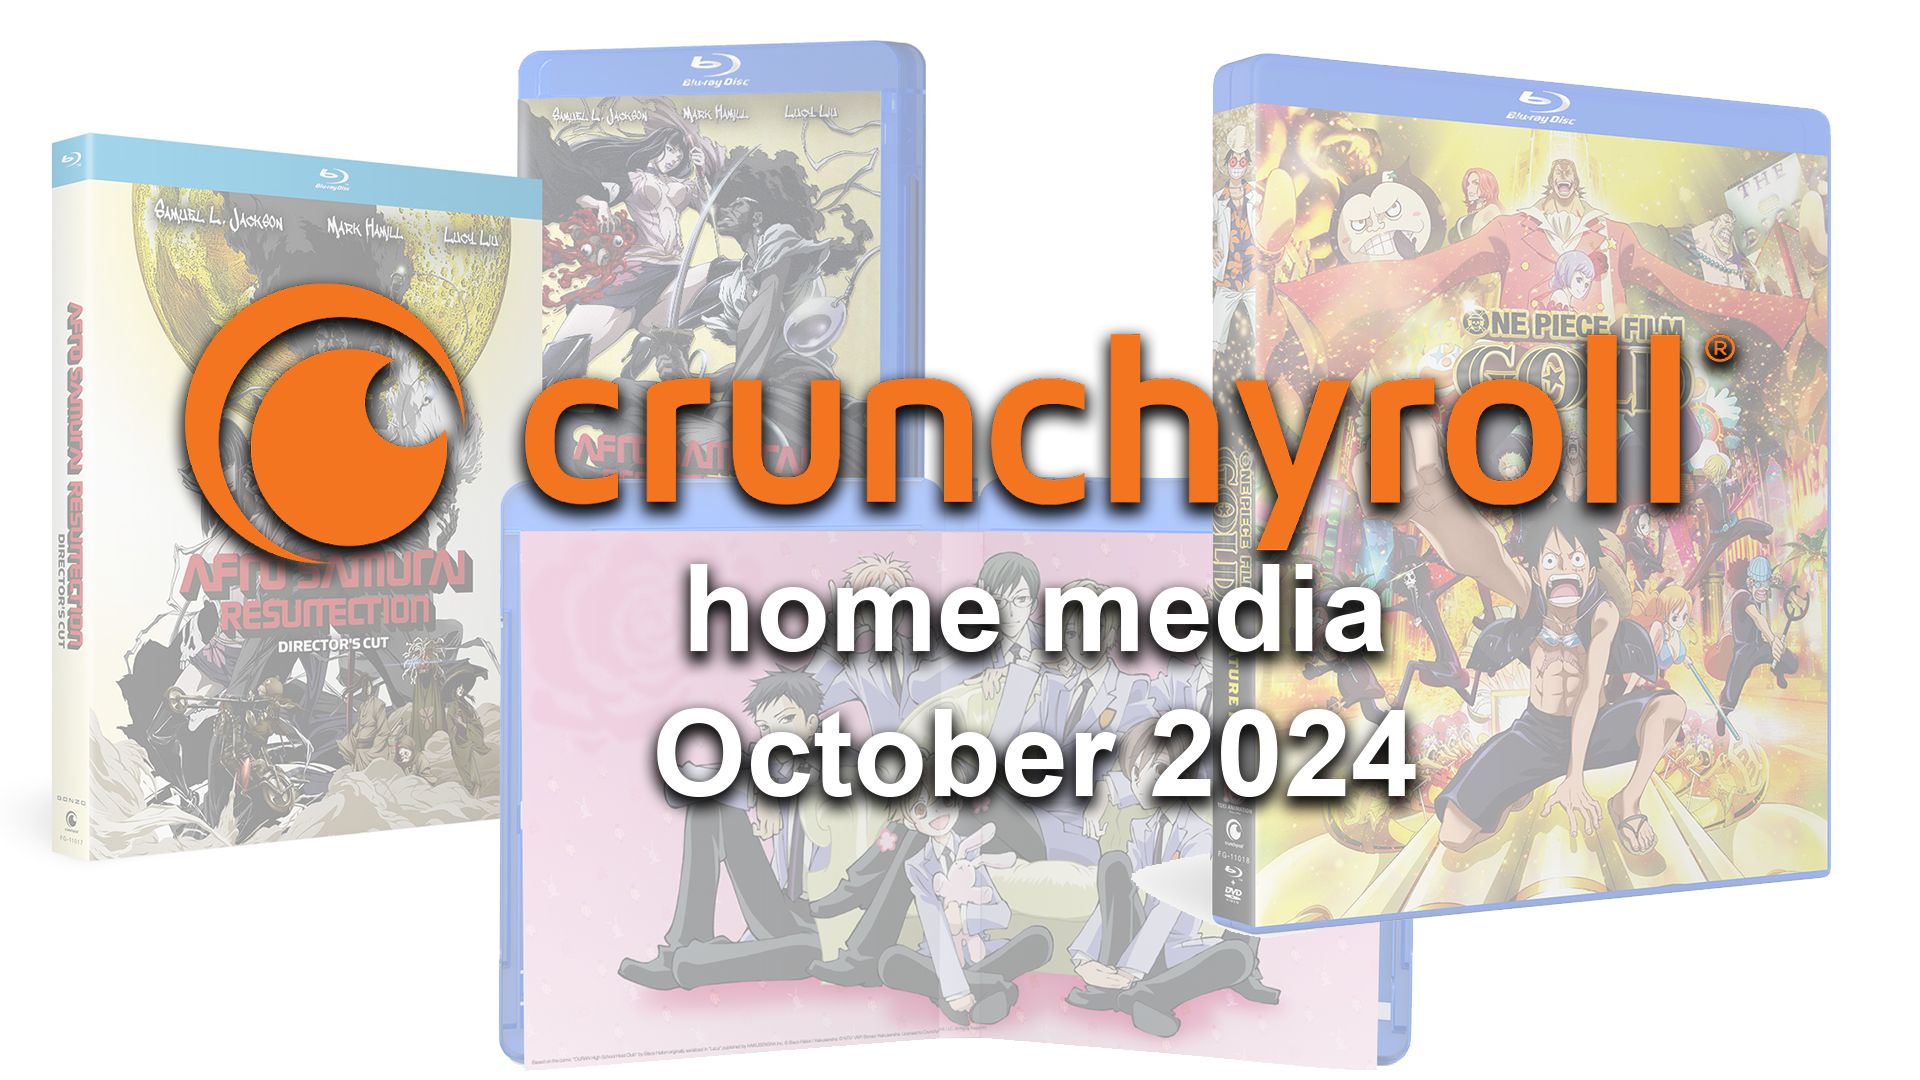 Crunchyroll home media October 2024